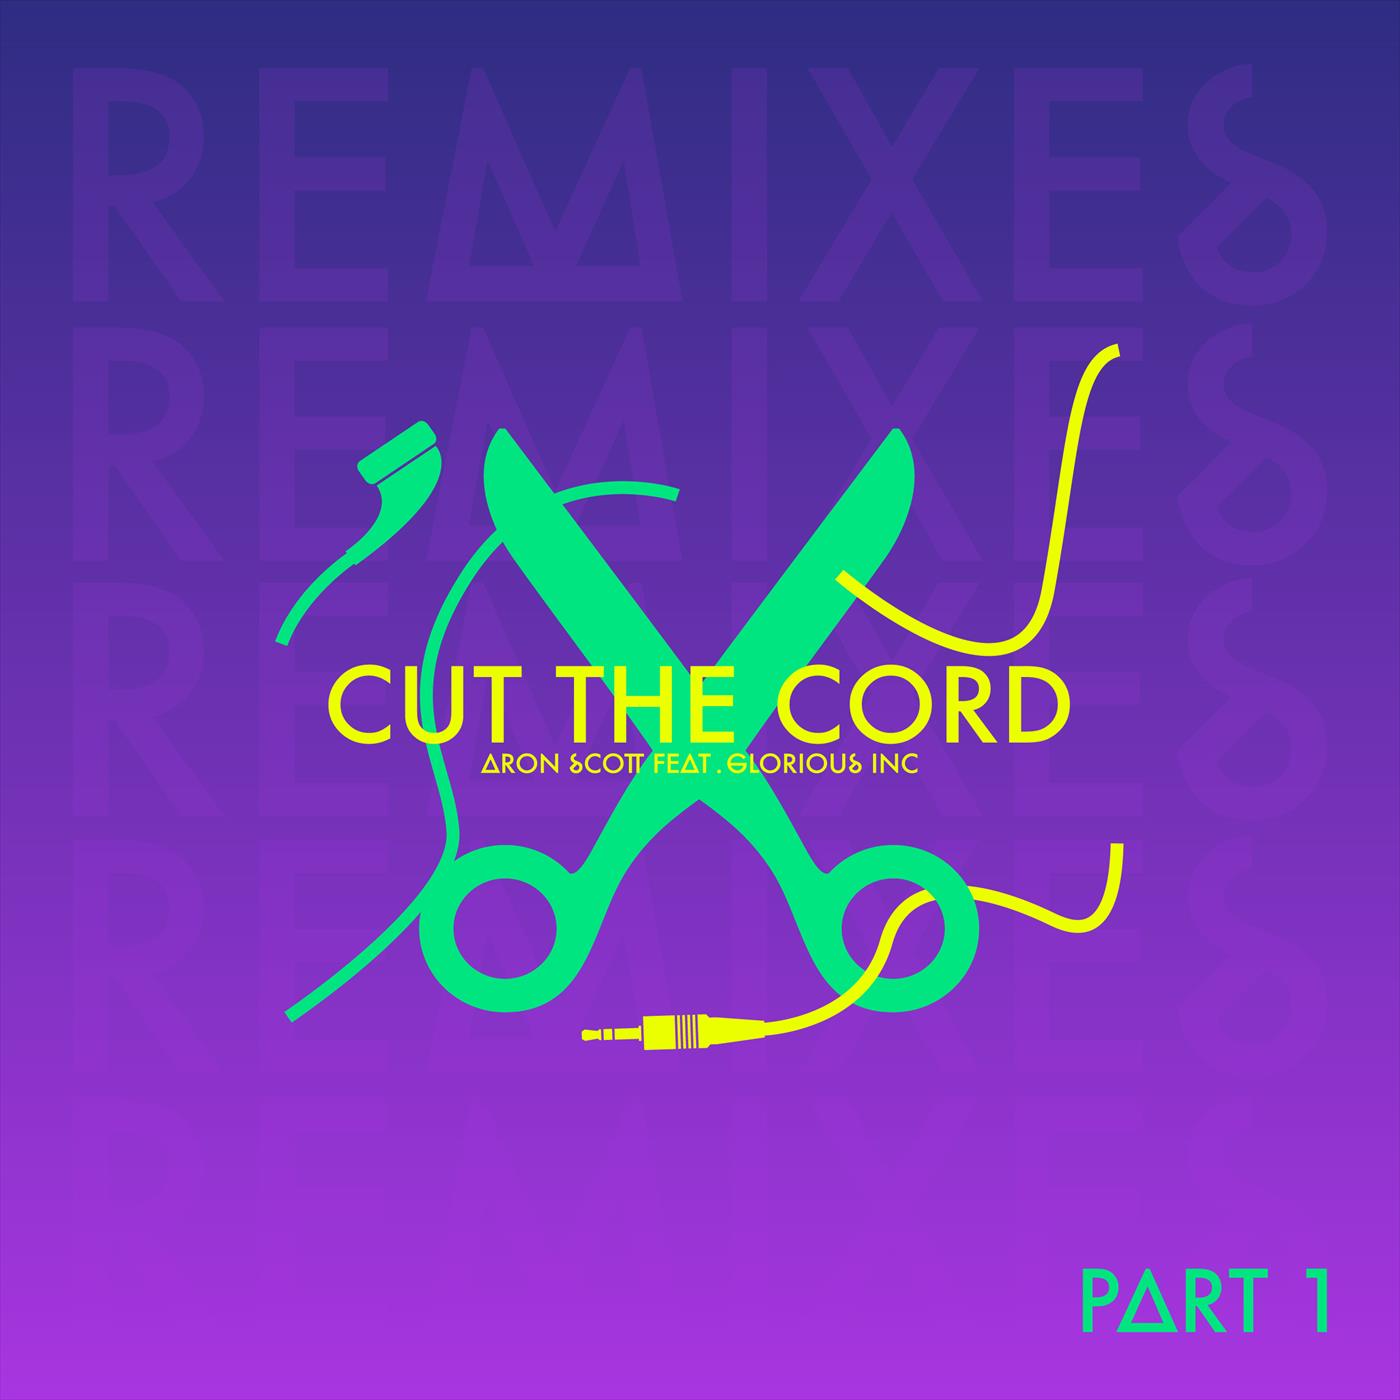 Cut The Cord - Remixes Part 1